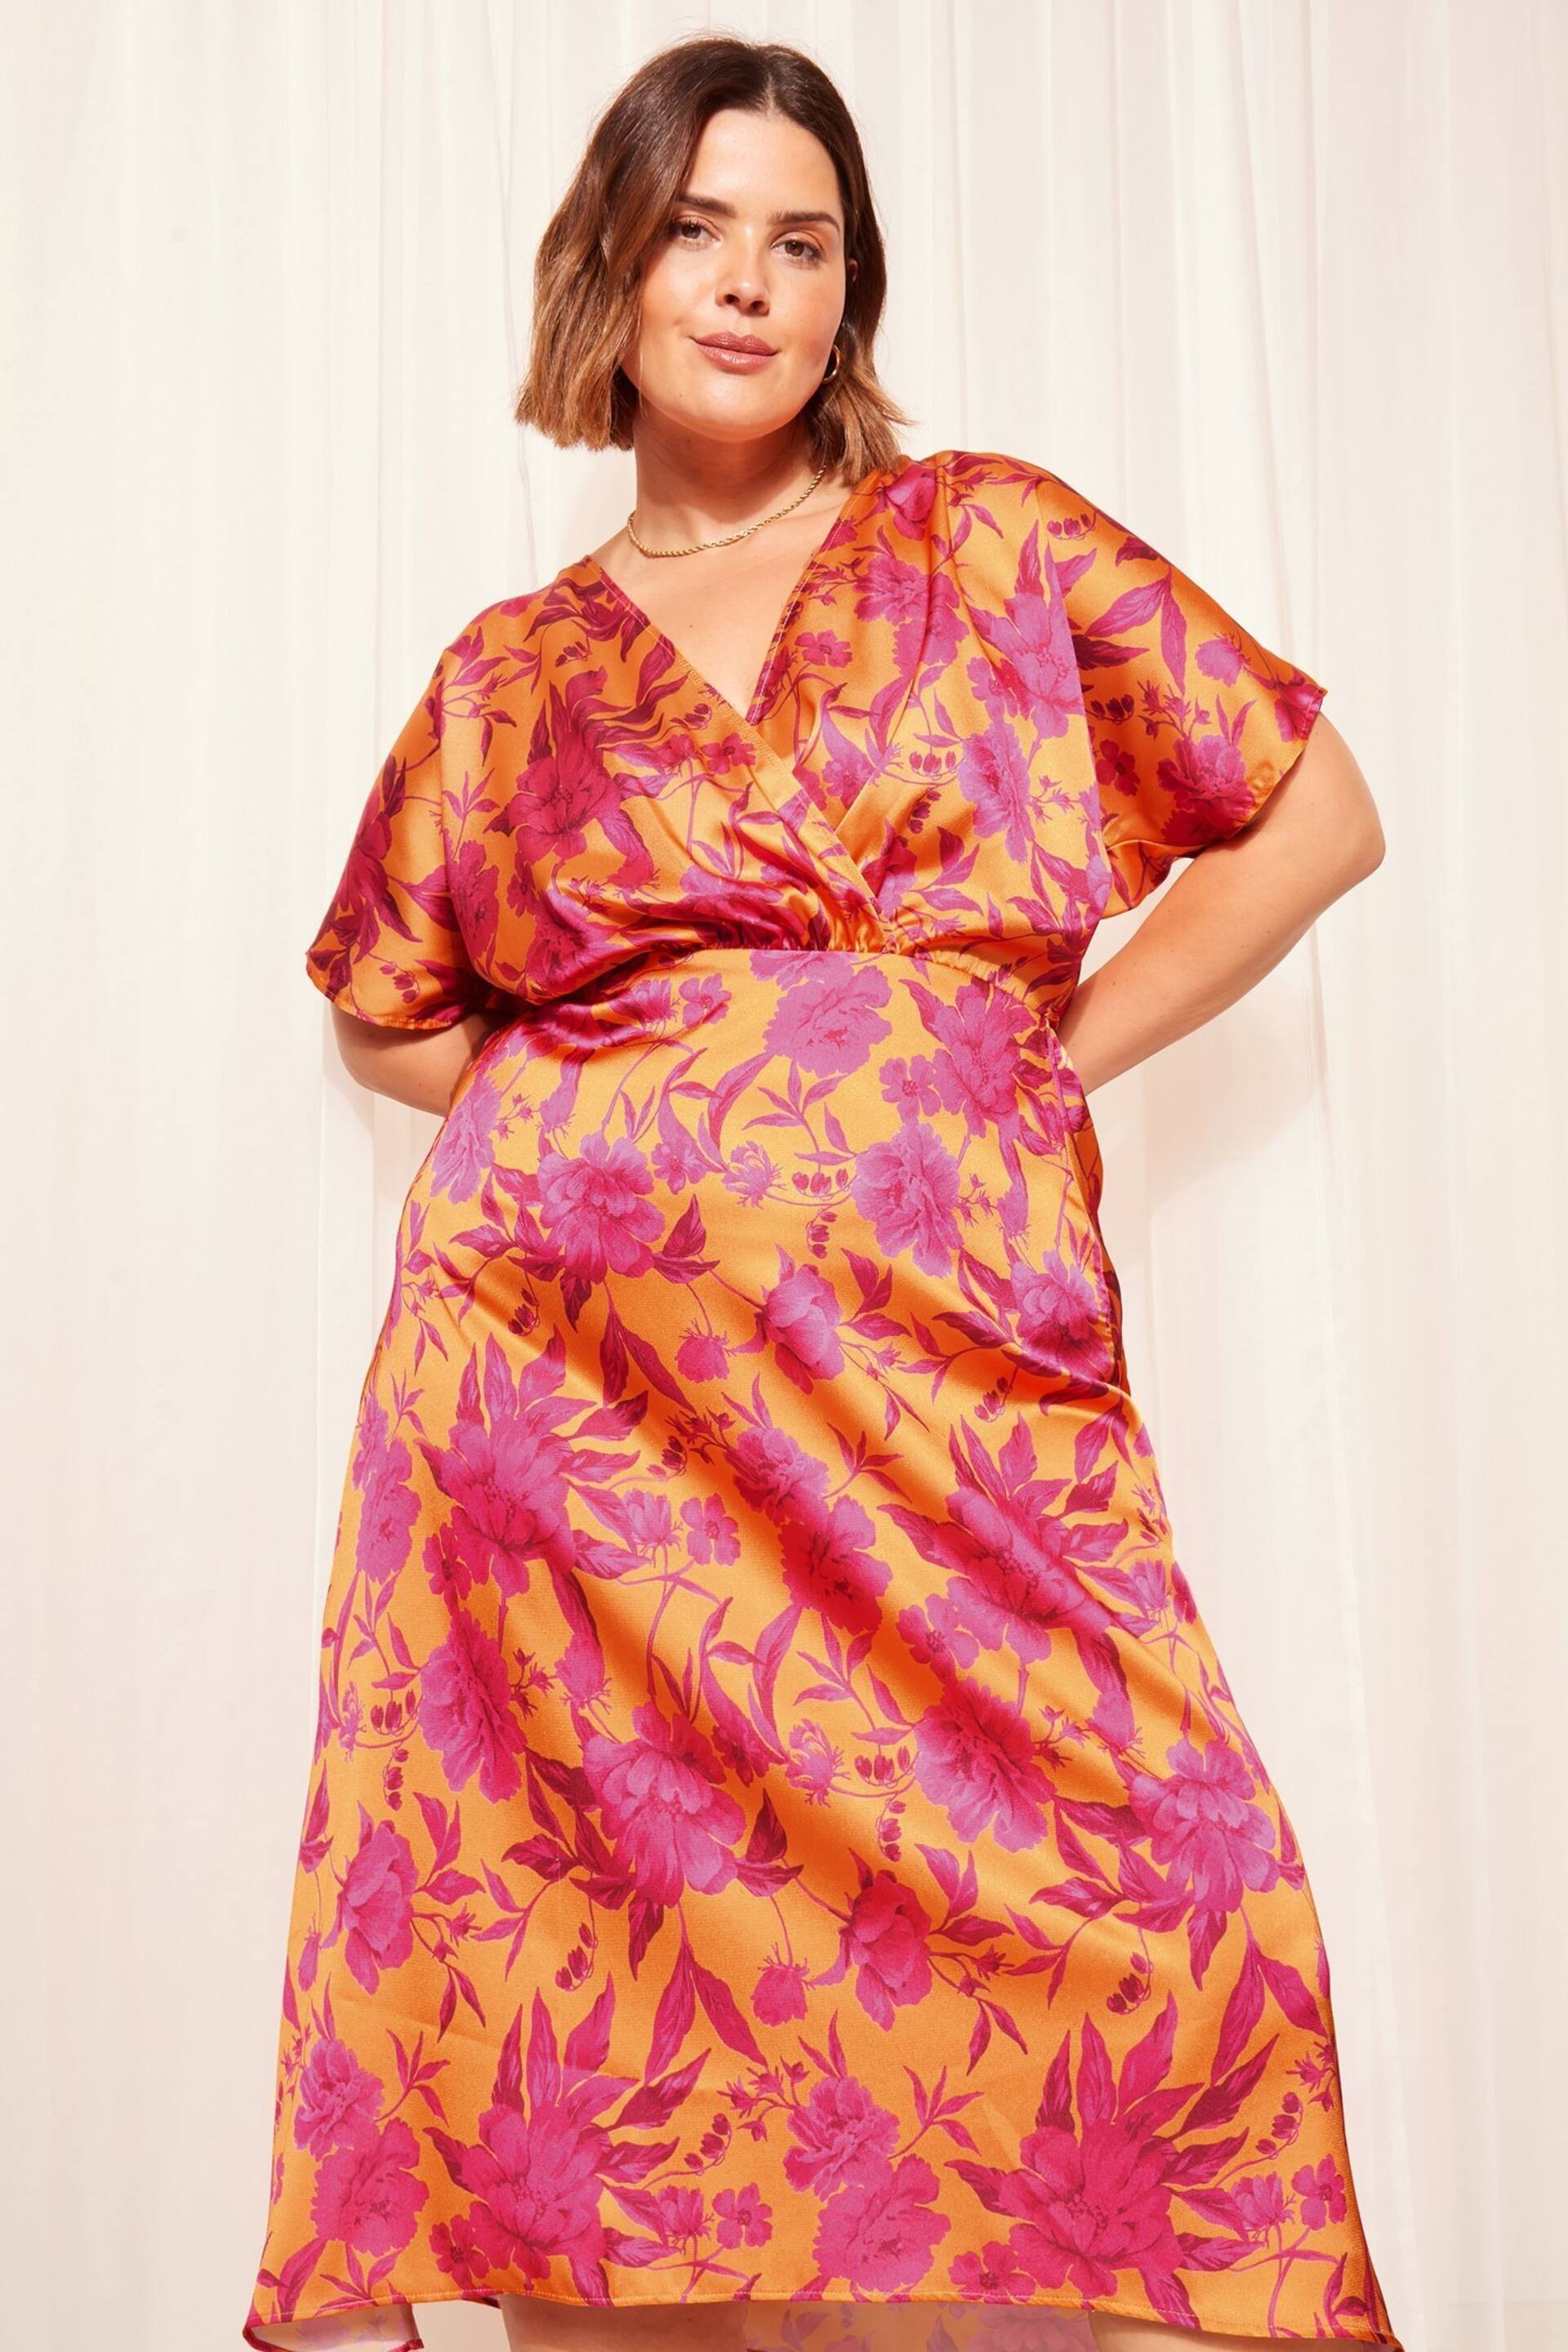 Curves Like These Orange Satin Short Sleeve Wrap Midi Dress - Image 3 of 4